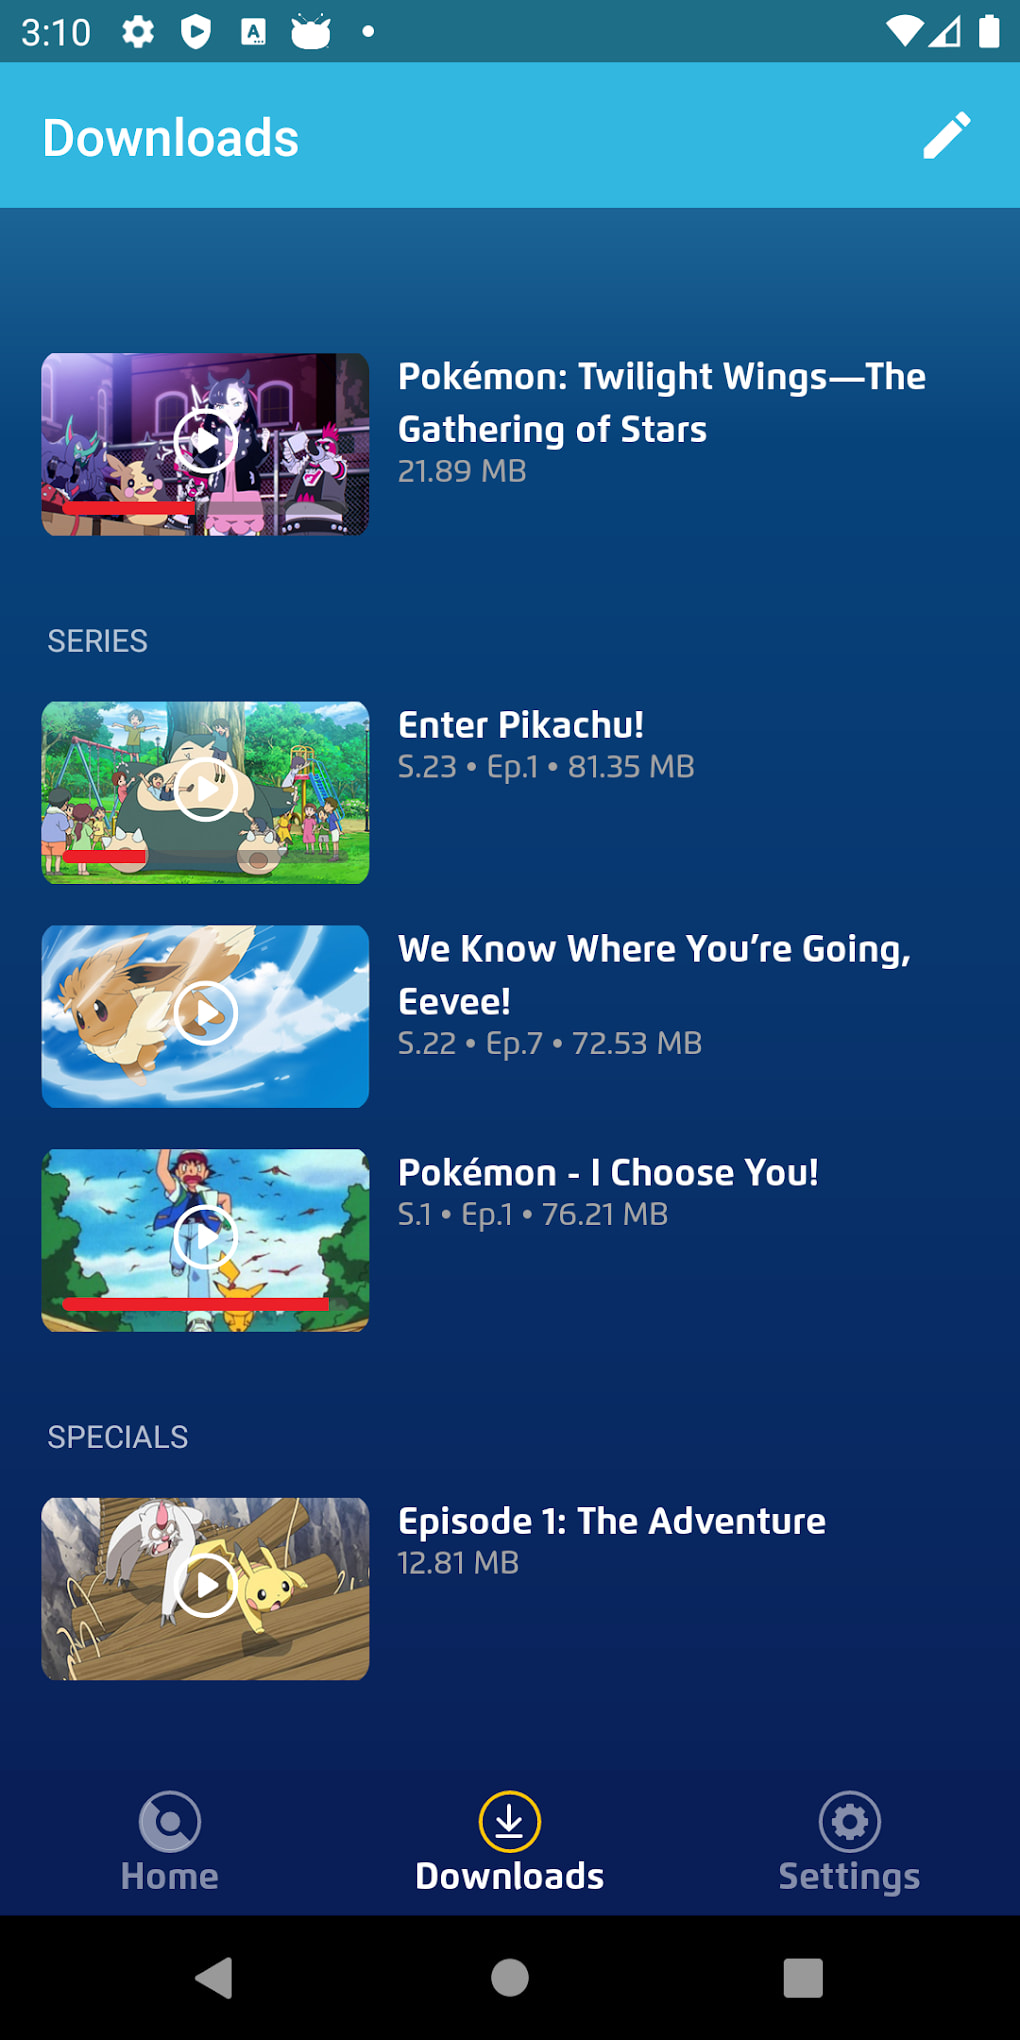 Pokémon TV, Software